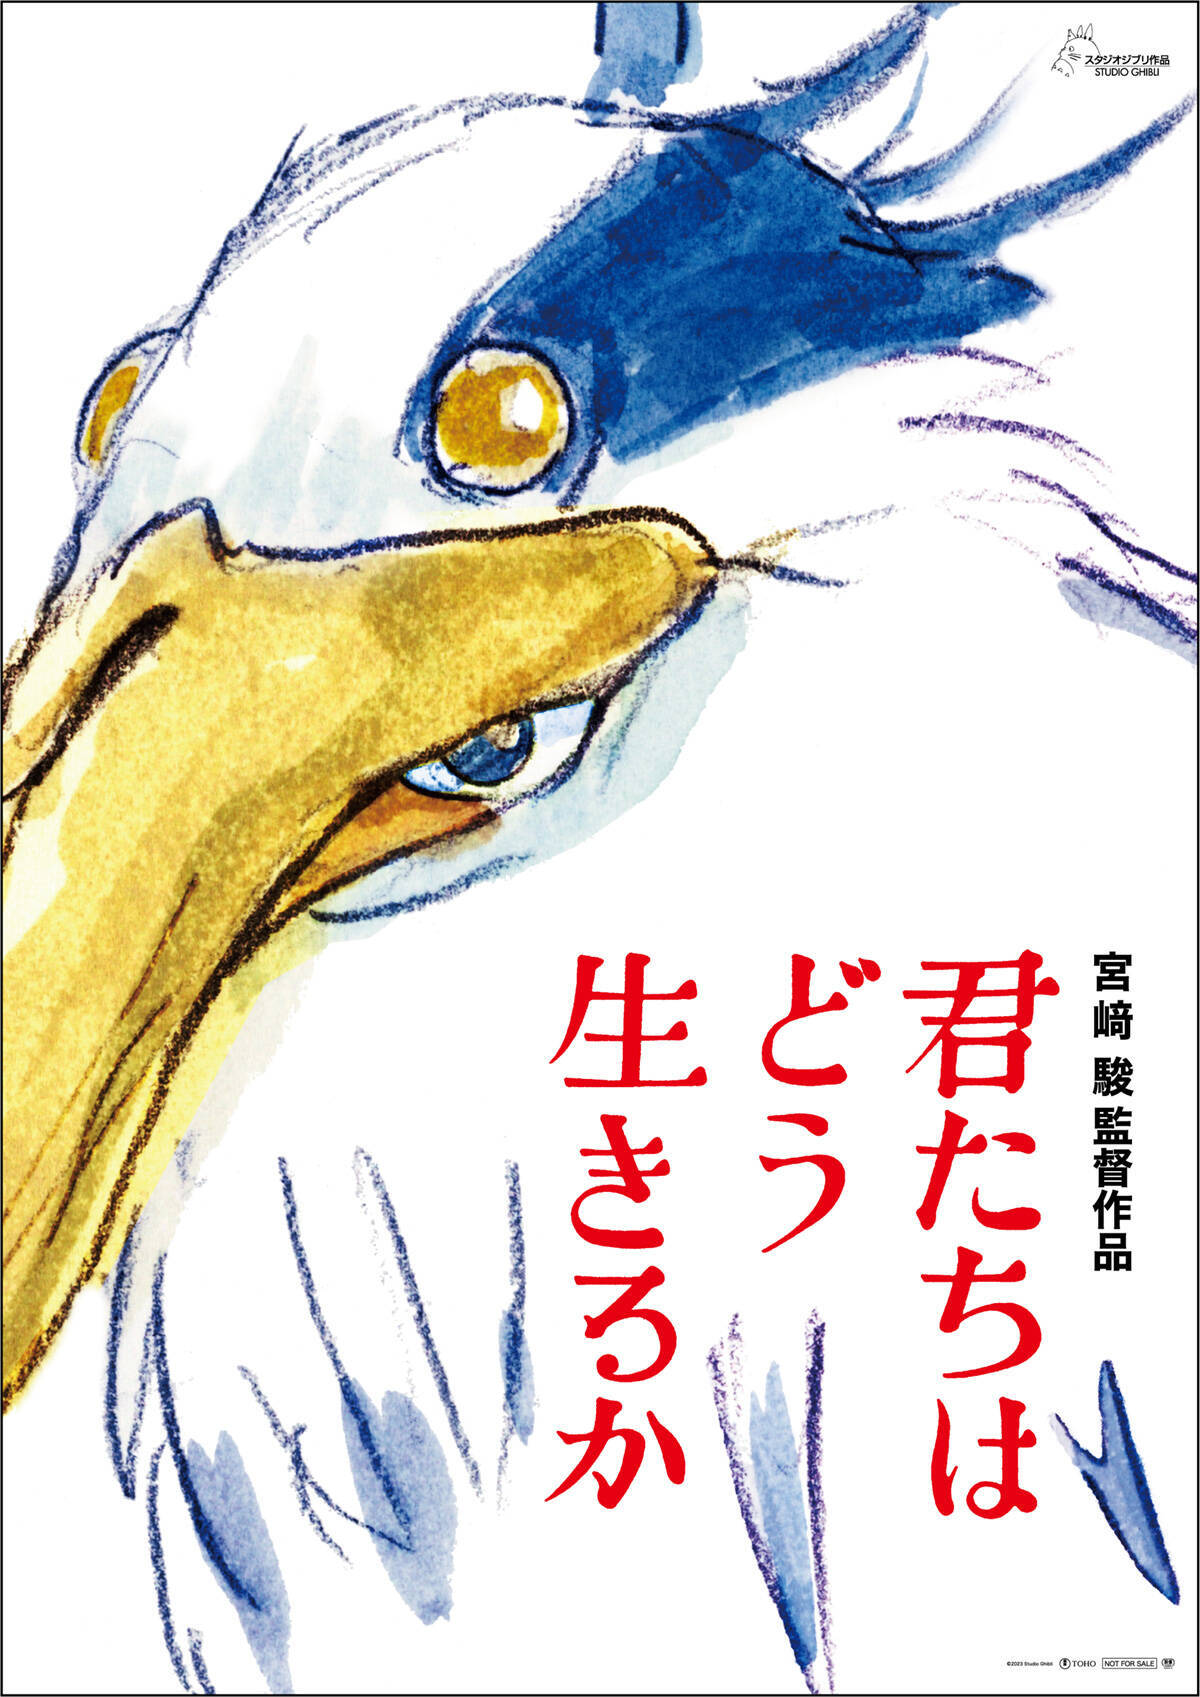 宮﨑駿監督『君たちはどう生きるか』を民俗学から読む。鳥と異界、「産屋」のタブー、ワラワラについて